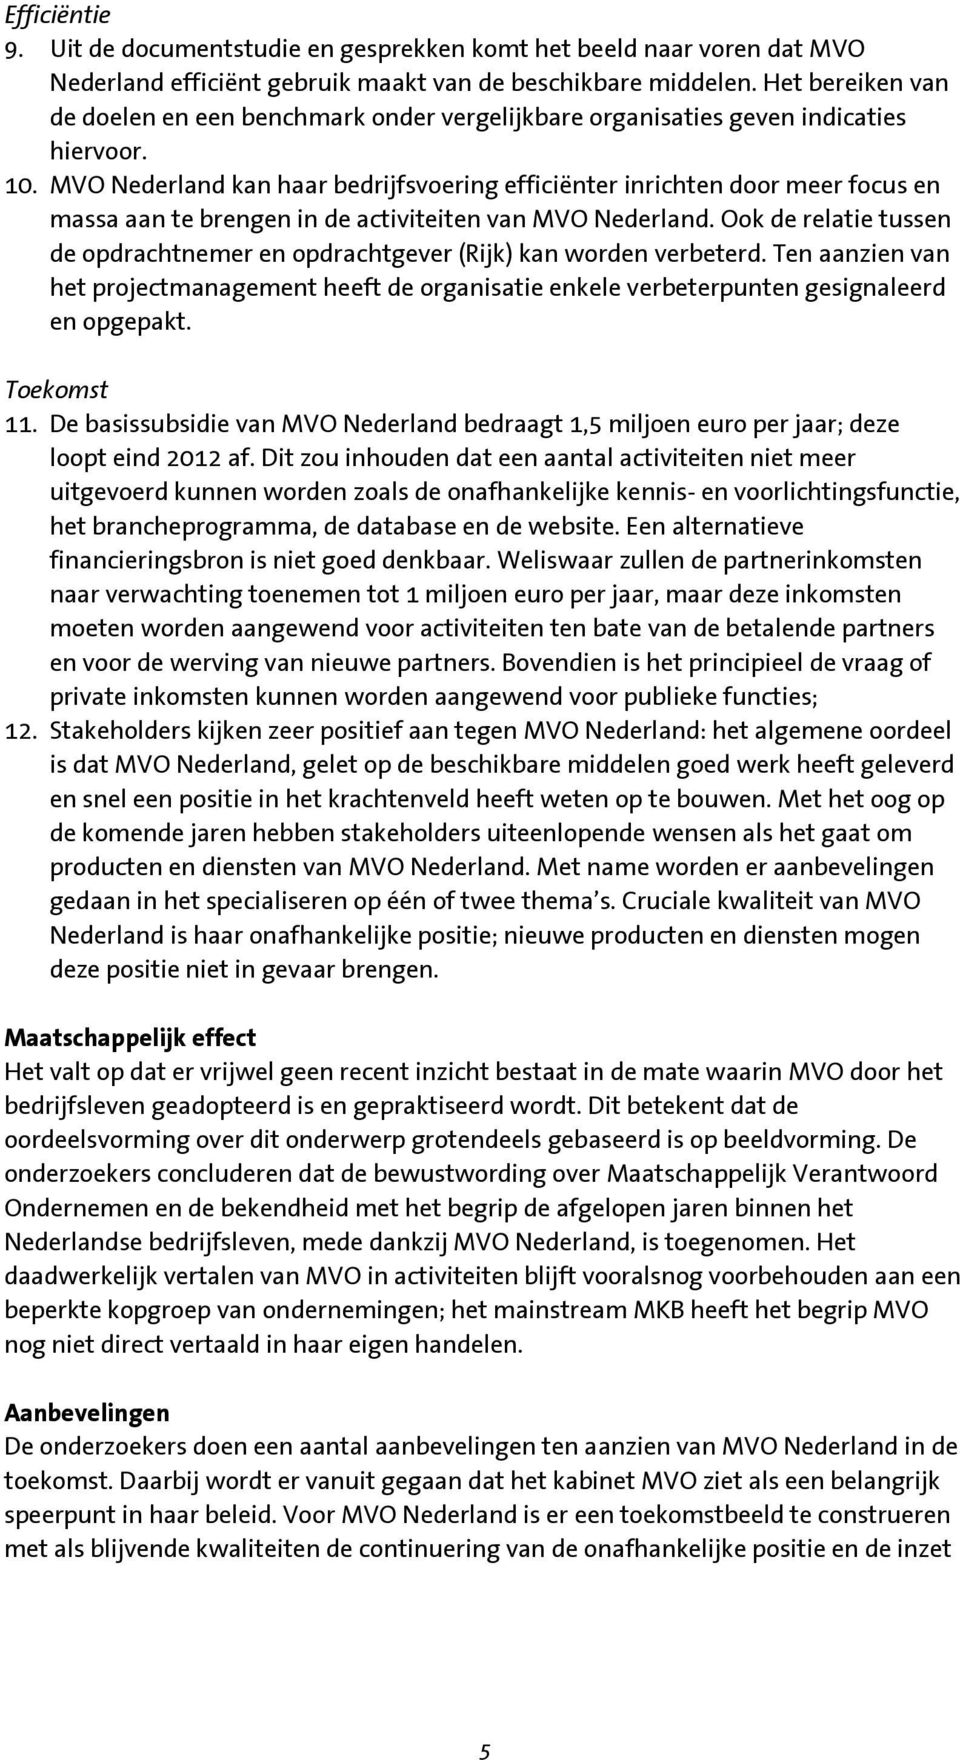 MVO Nederland kan haar bedrijfsvoering efficiënter inrichten door meer focus en massa aan te brengen in de activiteiten van MVO Nederland.